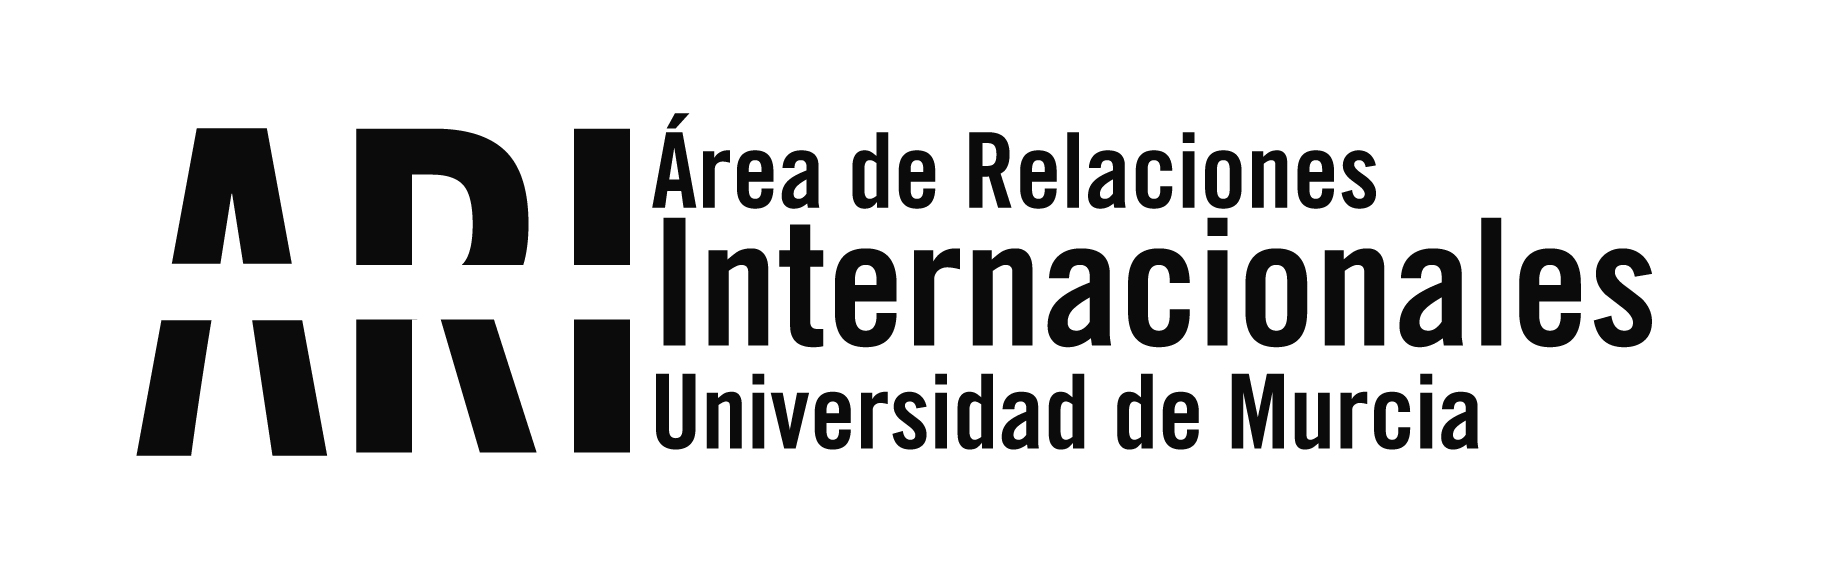 Sesión de orientación para estudiantes seleccionados ILA 2021-22: miércoles 19 de mayo - Área de Relaciones Internacionales